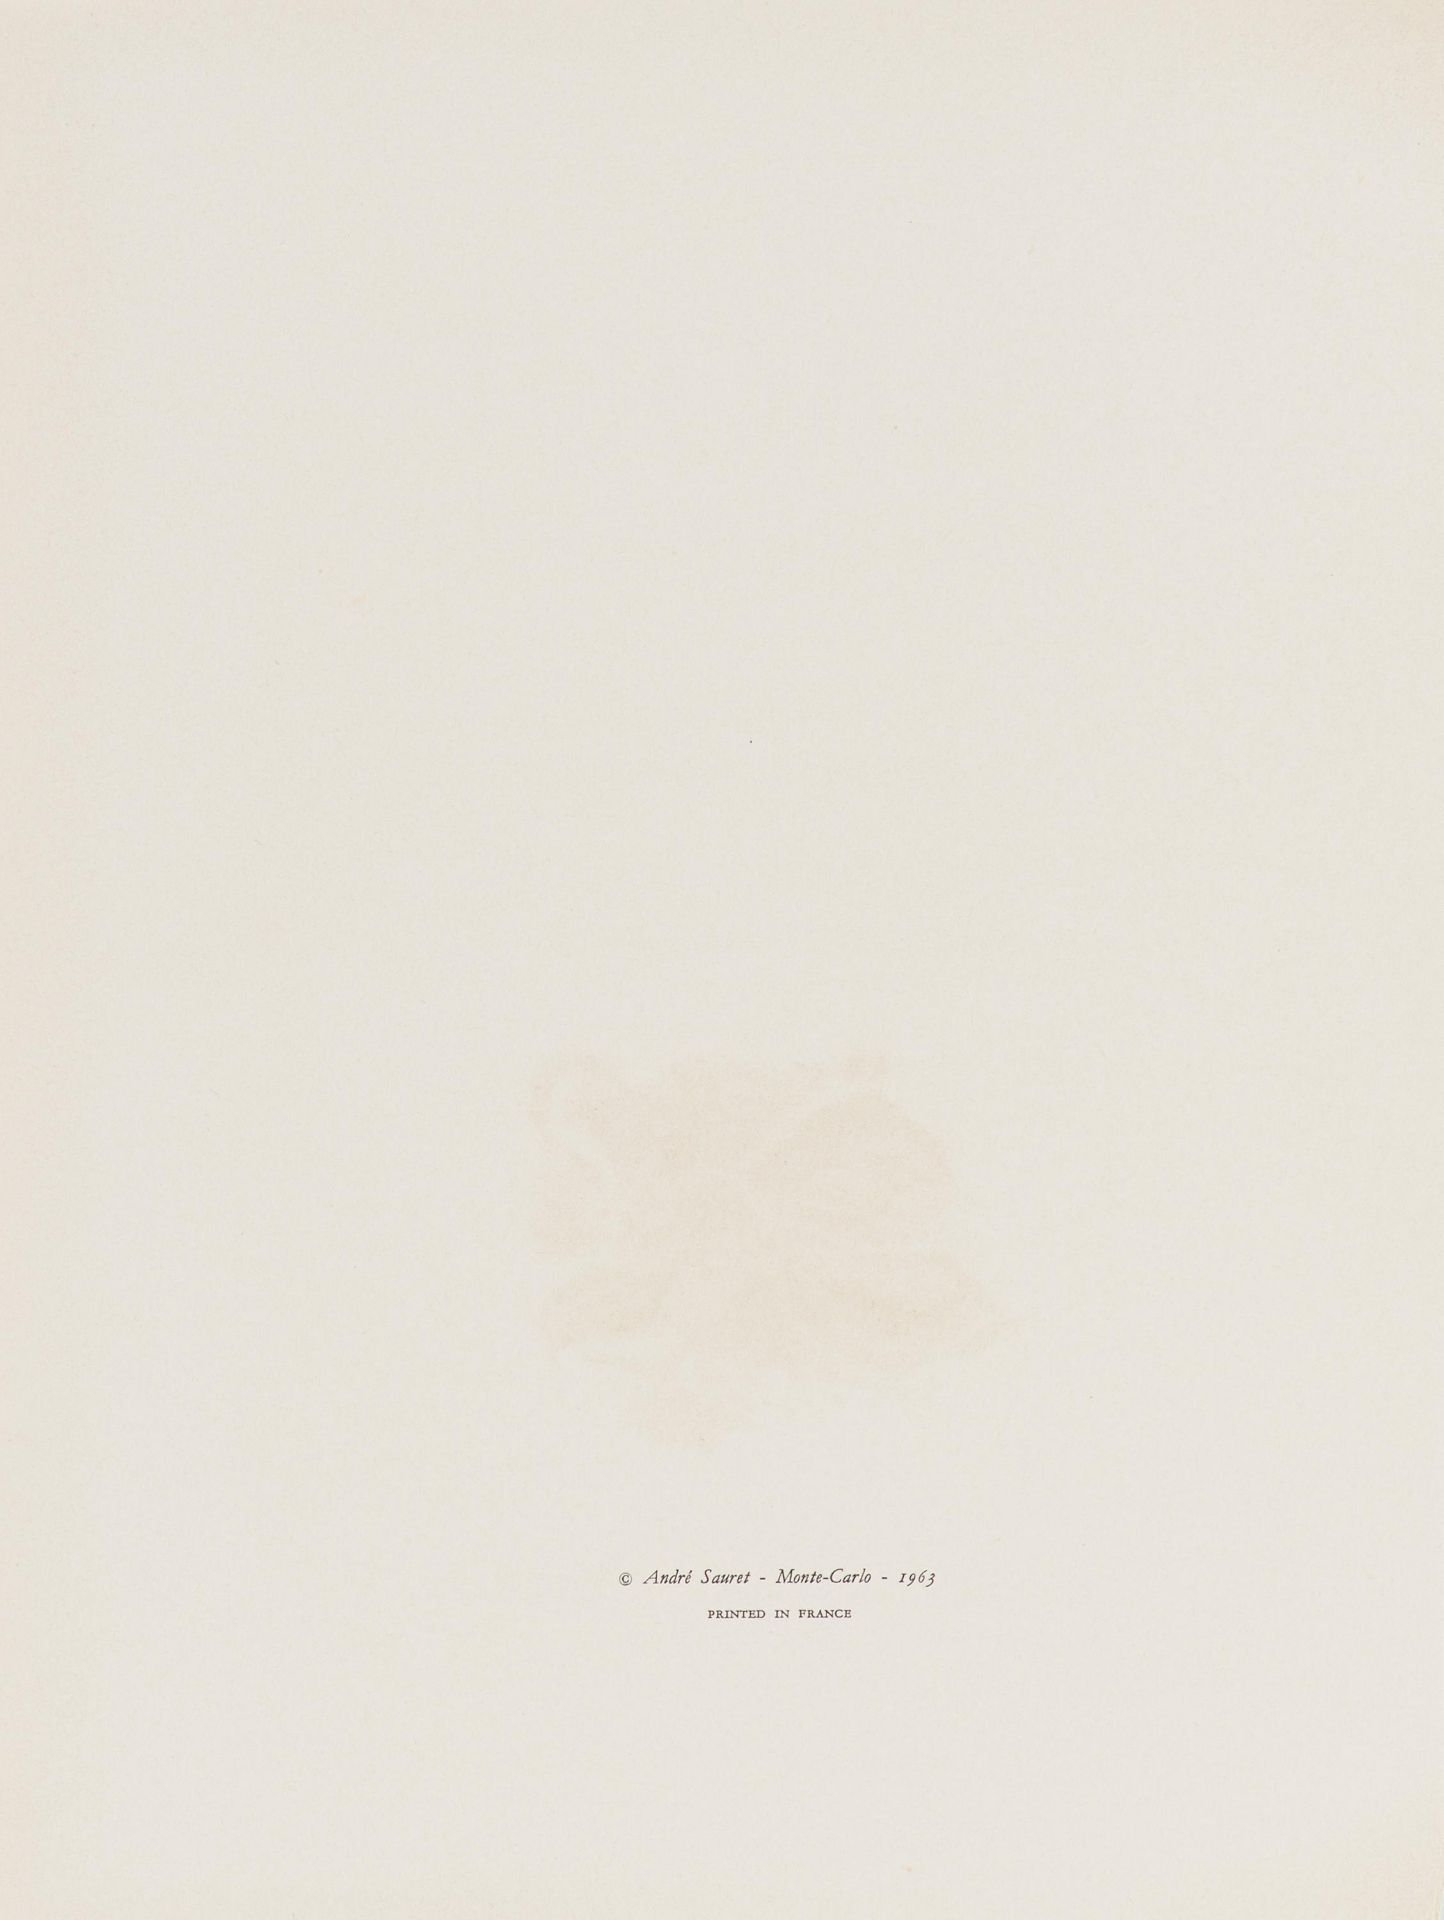 Braque, Georges1881 Argenteuil - 1963 ParisLithographe. 1963. Komplettes Buch (Deluxe Edition) mit - Bild 9 aus 13